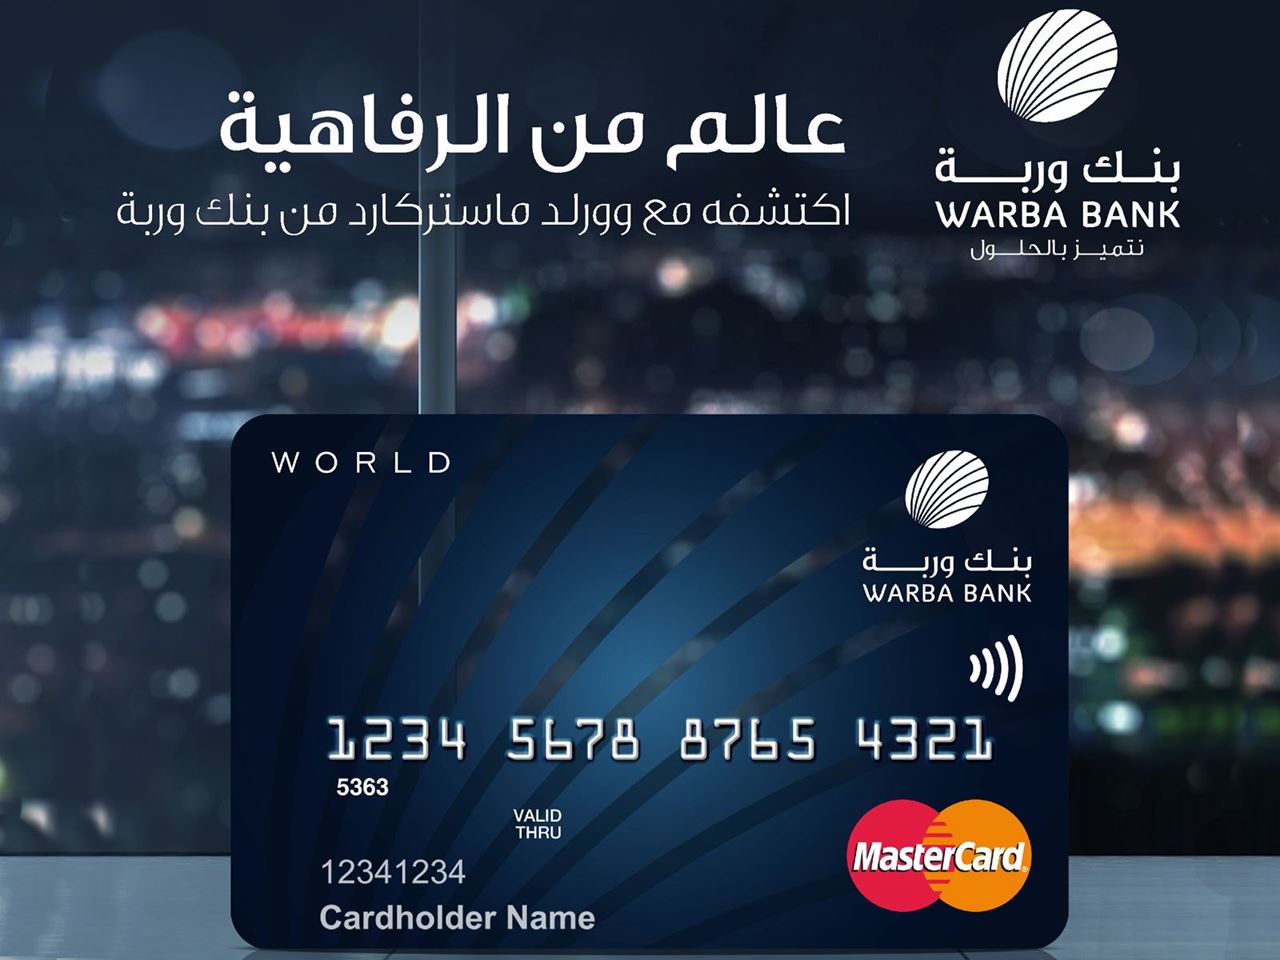 بطاقة وورلد ماستركارد (World MasterCard) الائتمانية من بنك وربة